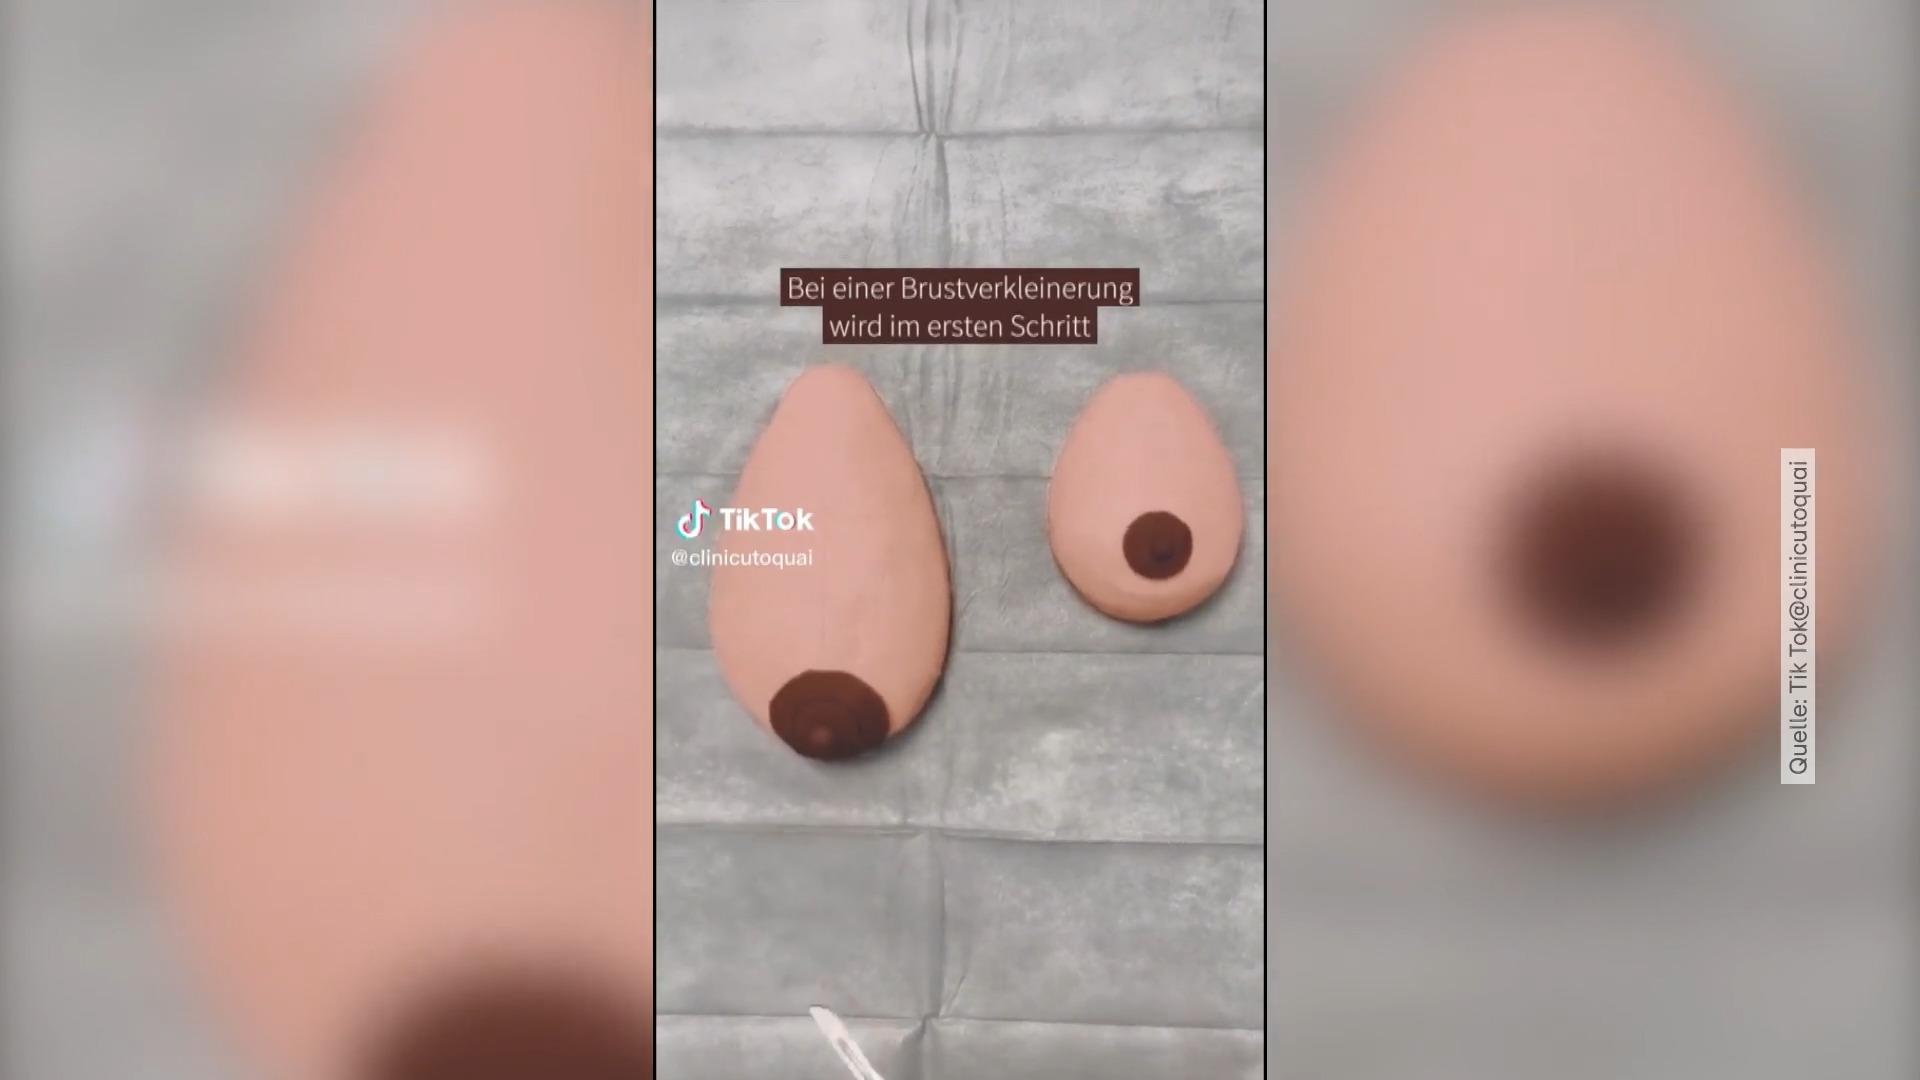 Hier wird eine Brust kleiner "geknetet" Medizinvideo geht viral